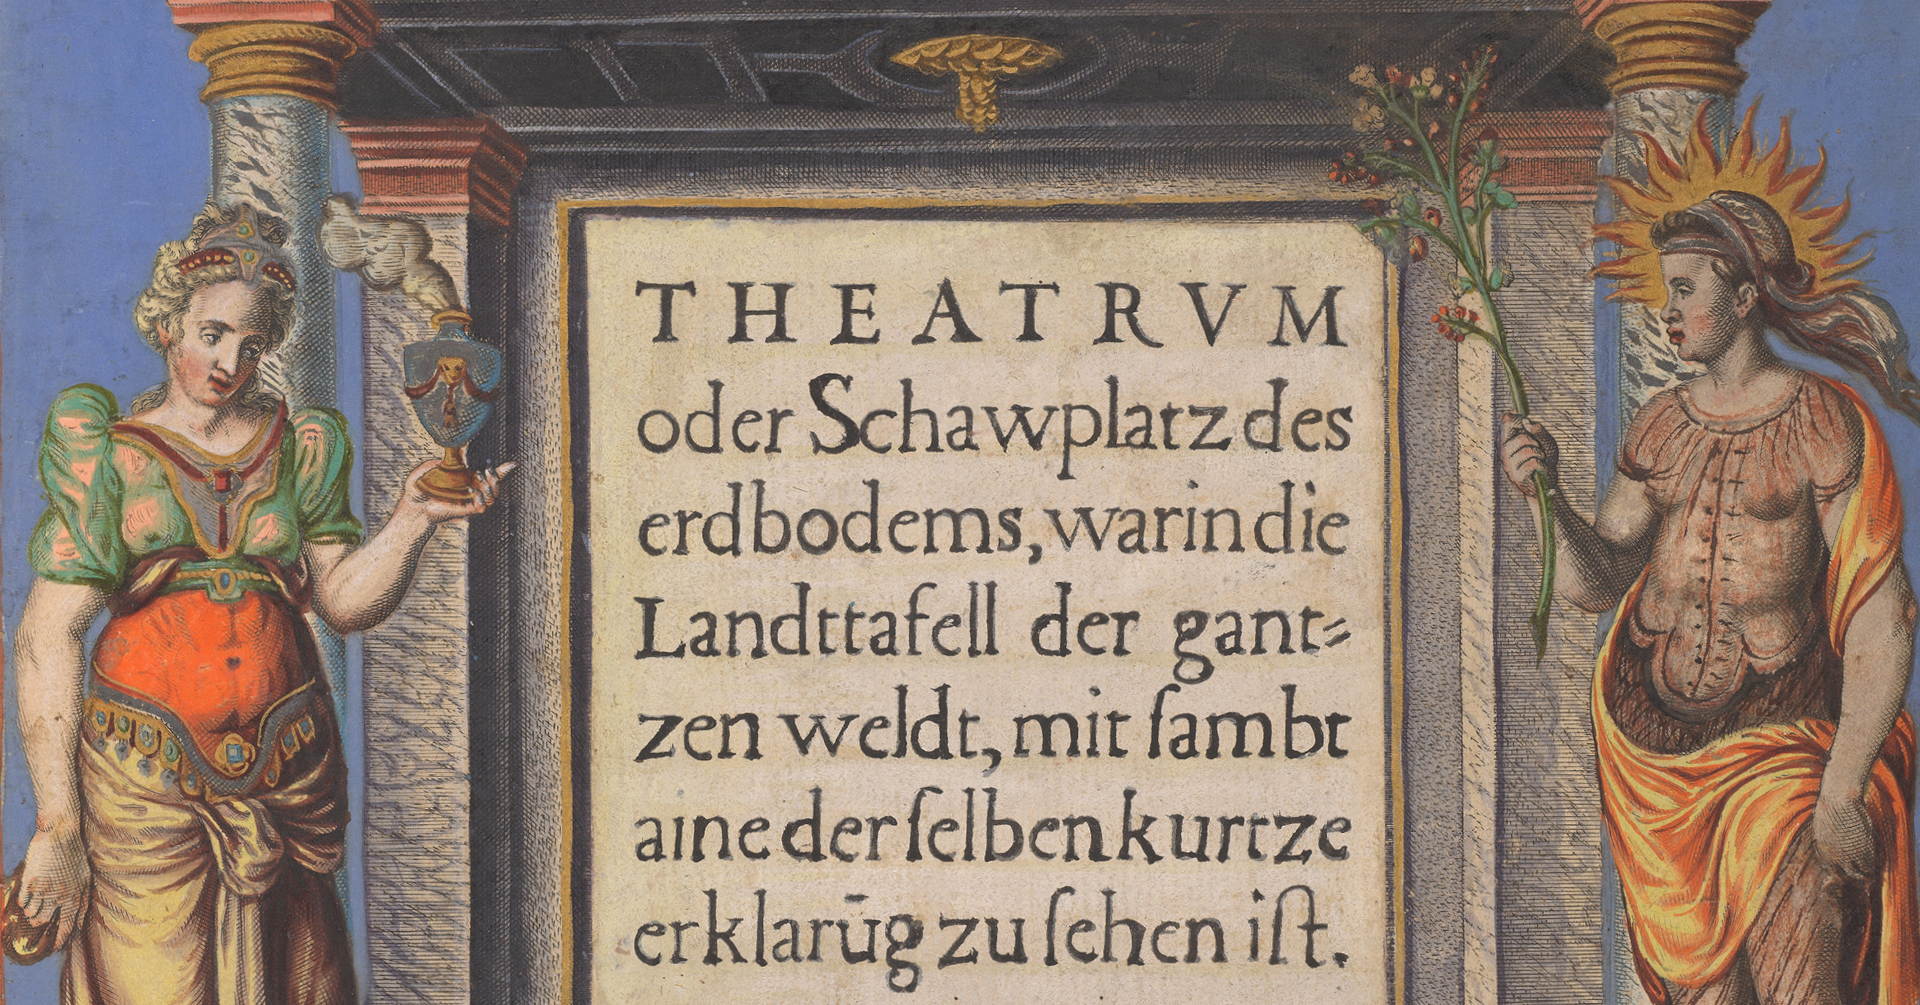 Tittelsiden i Abraham Ortelius' atlas